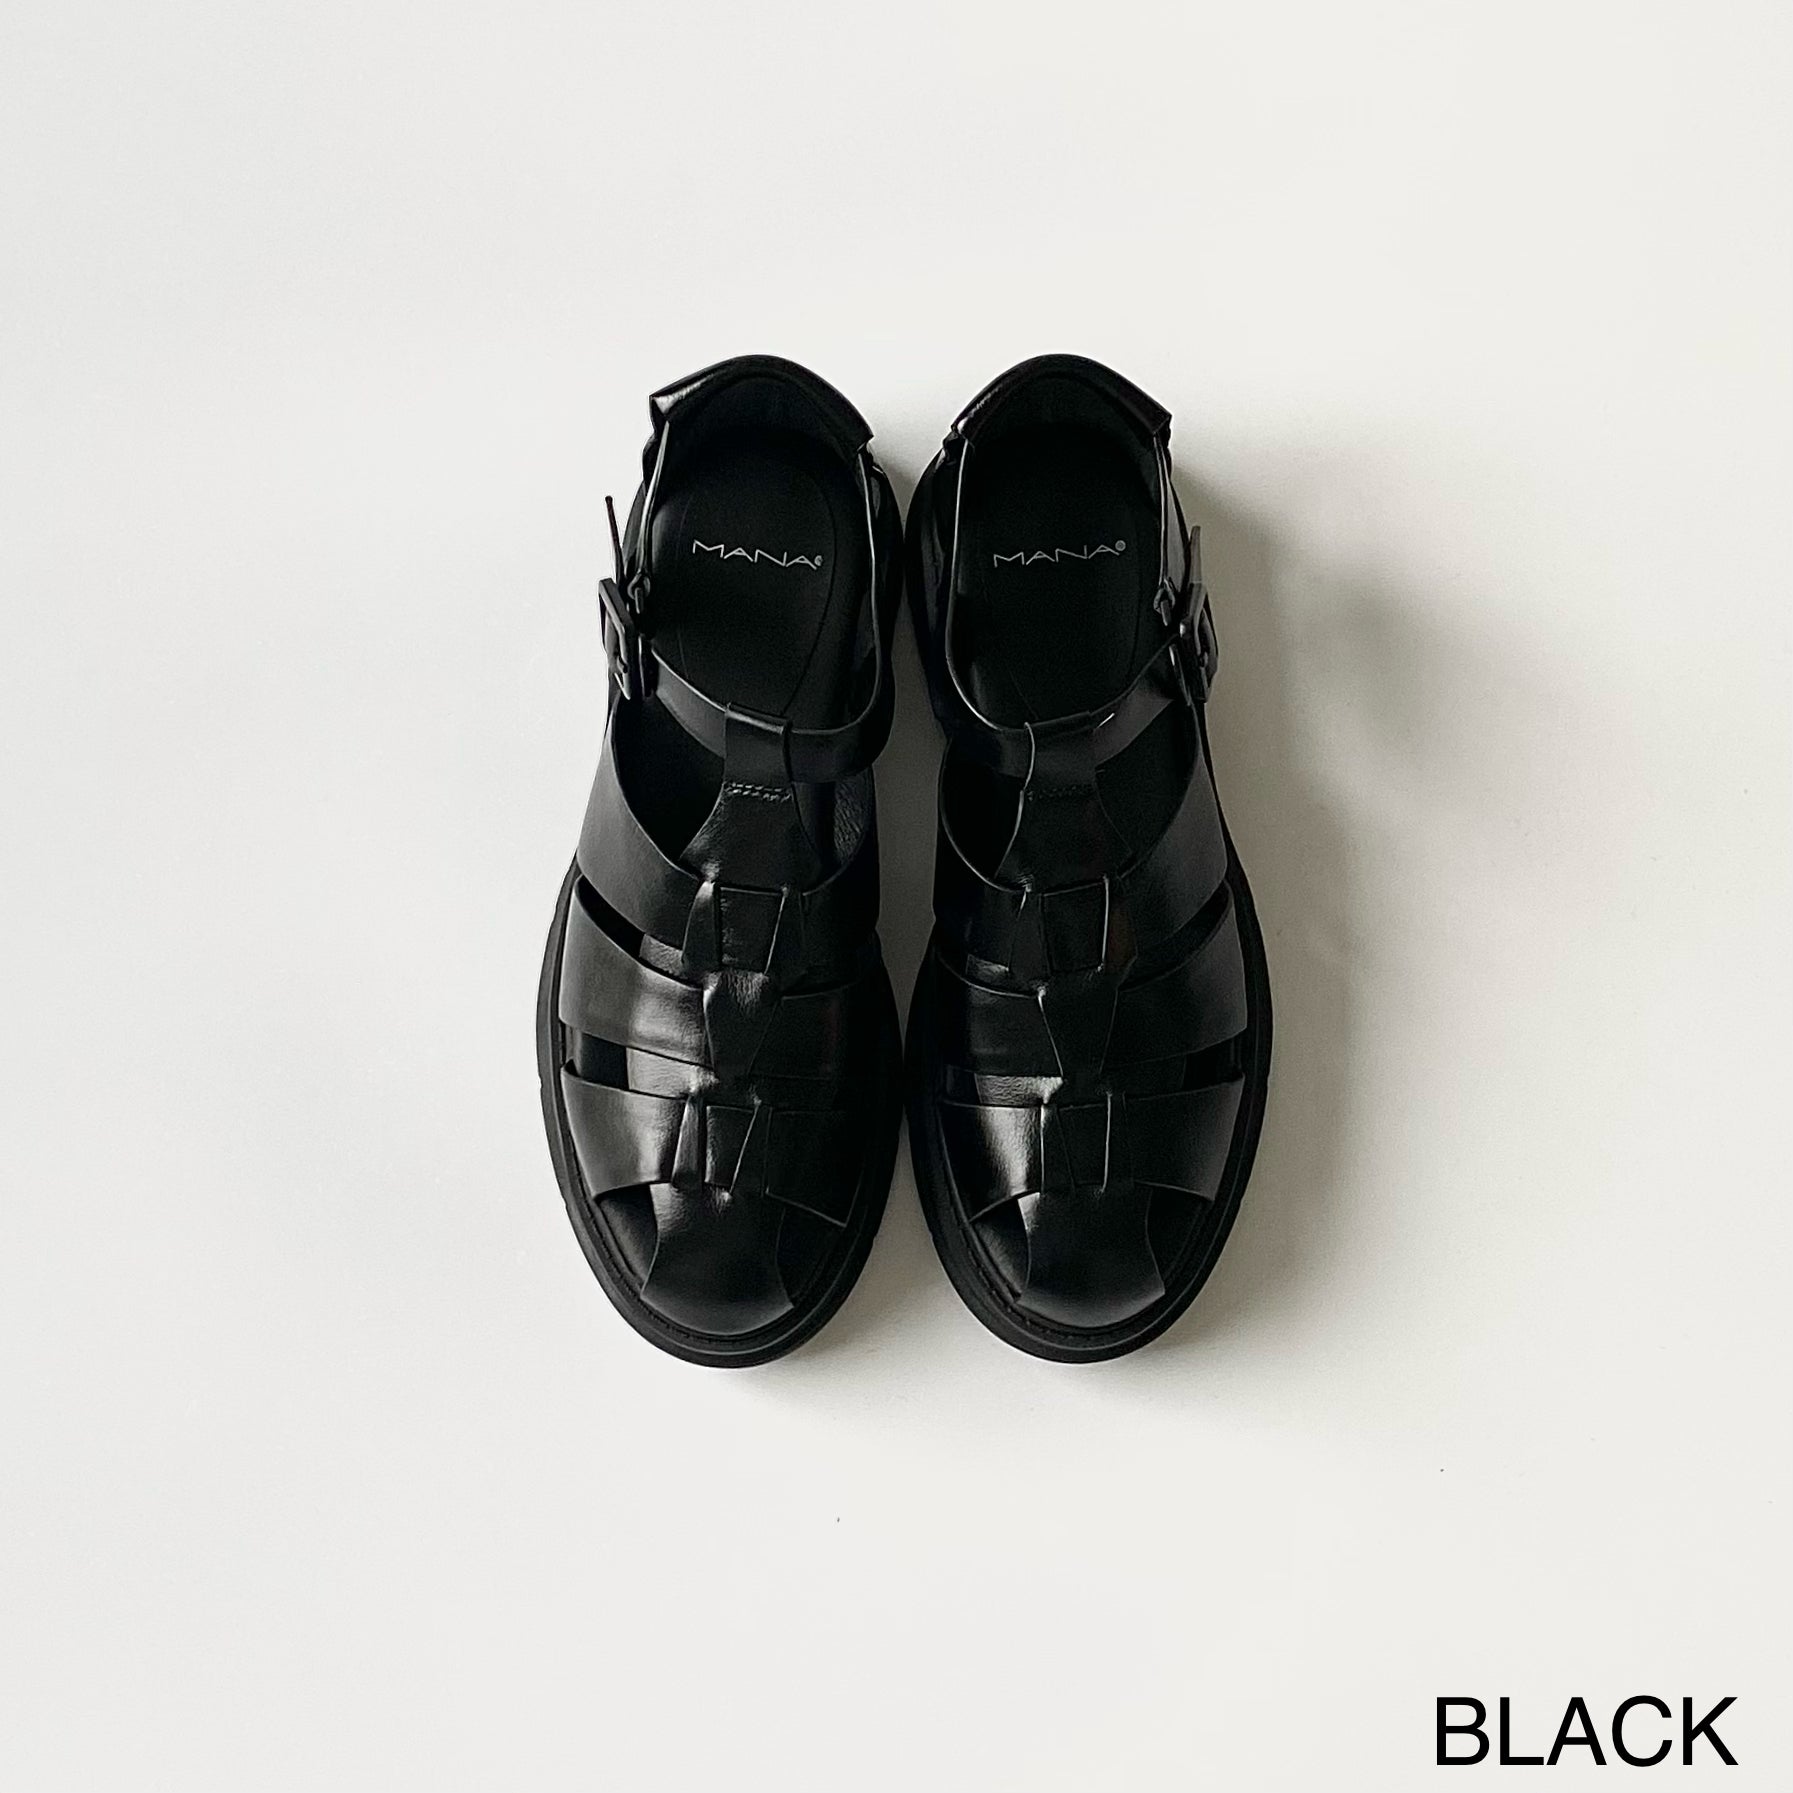 BLACK / 34(22.0cm)